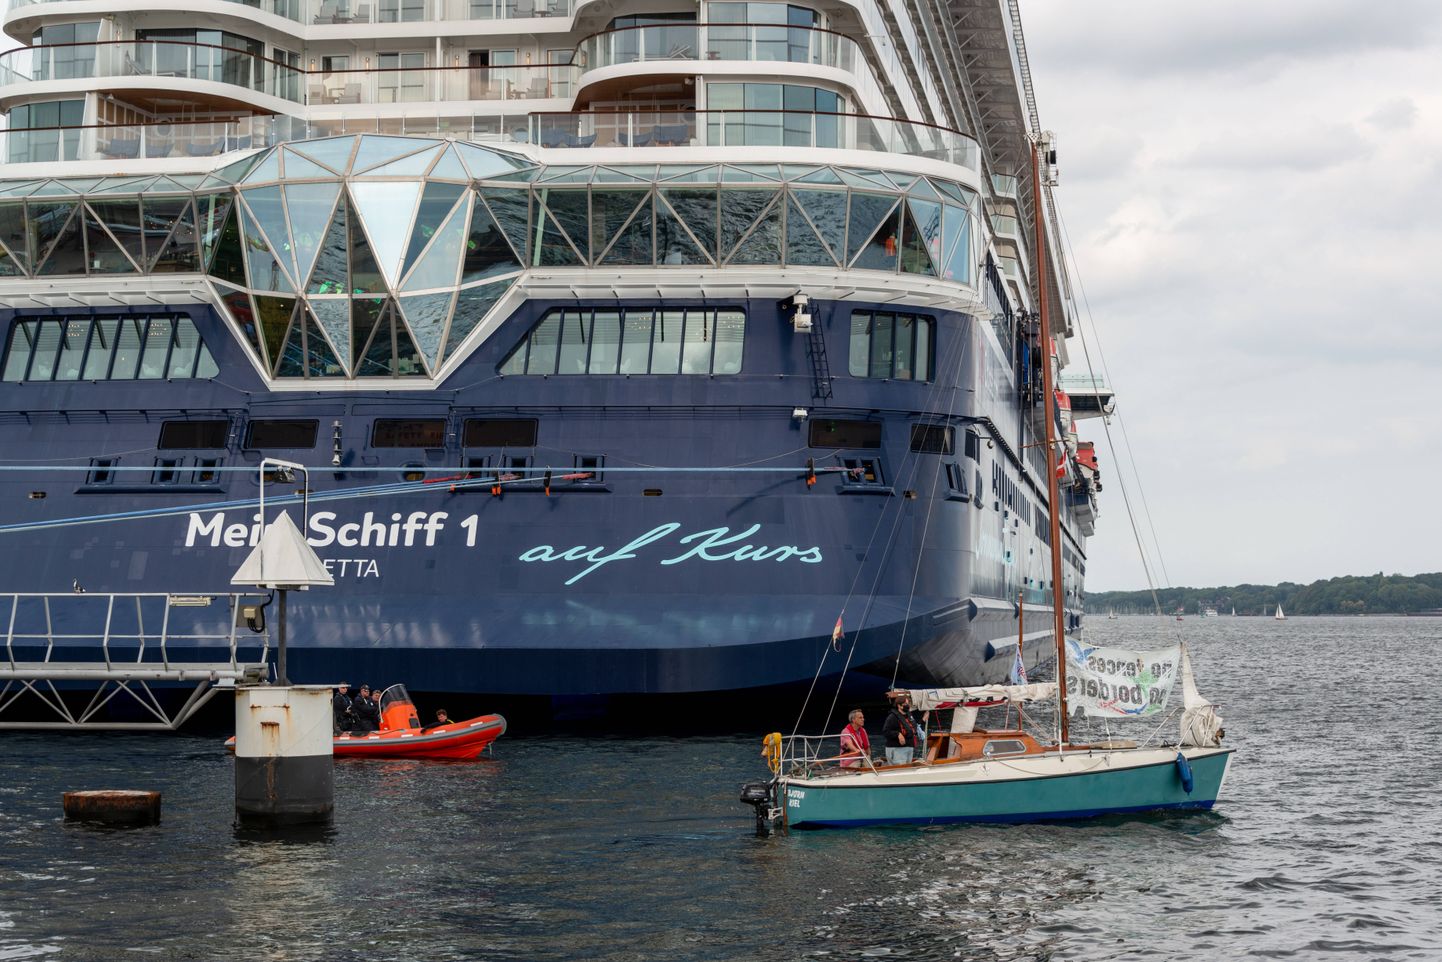 Kruiisilaev Mein Schiff 1 sai eelmisel aastal Kieli sadamas suurte ristluslaevade keskkonnakahjulikkuse vastu protestivate aktivistide meeleavalduste sihtmärgiks